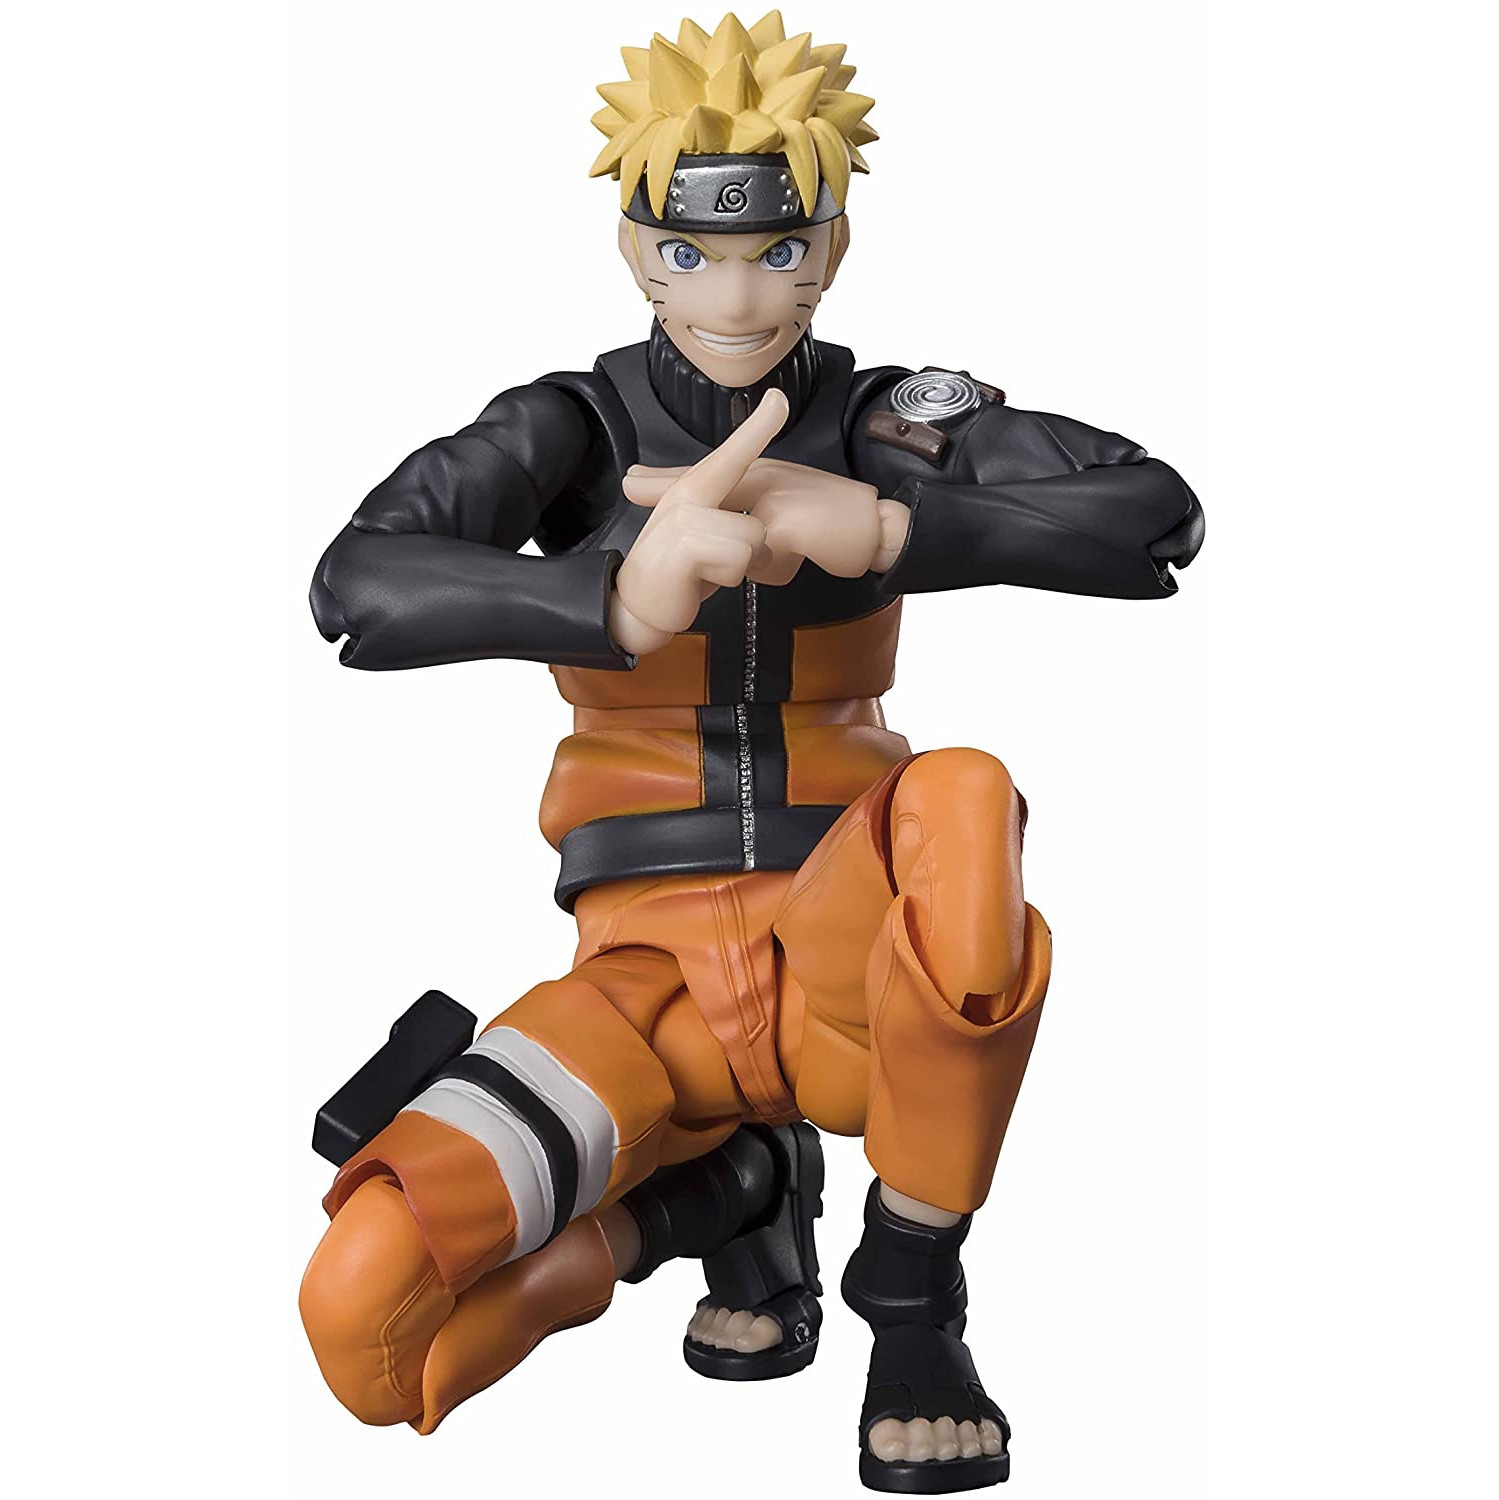 S.H.Figuarts: Naruto Uzumaki "The Jinchuriki Entrusted with Hope" Naruto Shippuden